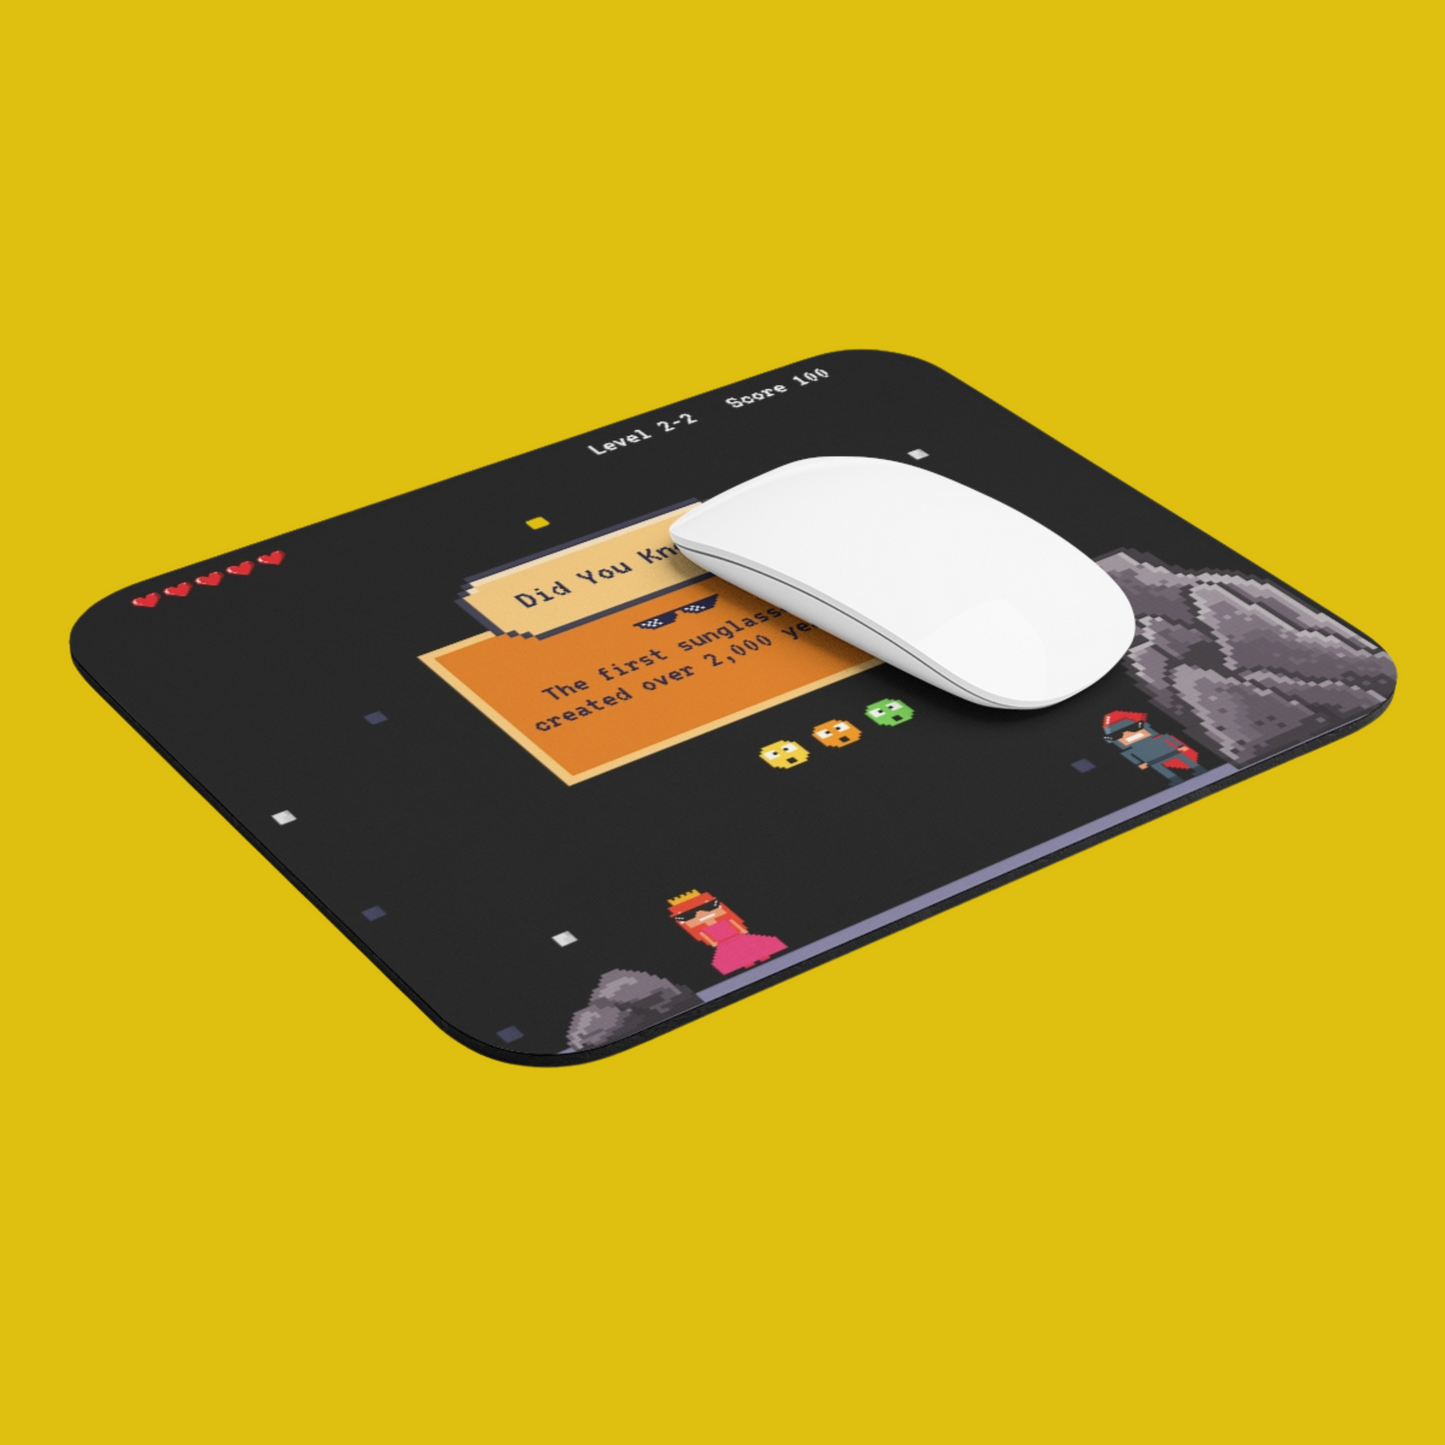 Thug Life Game - Mouse pad - Developer / Programmer / Coder / Software Engineer / DevOps